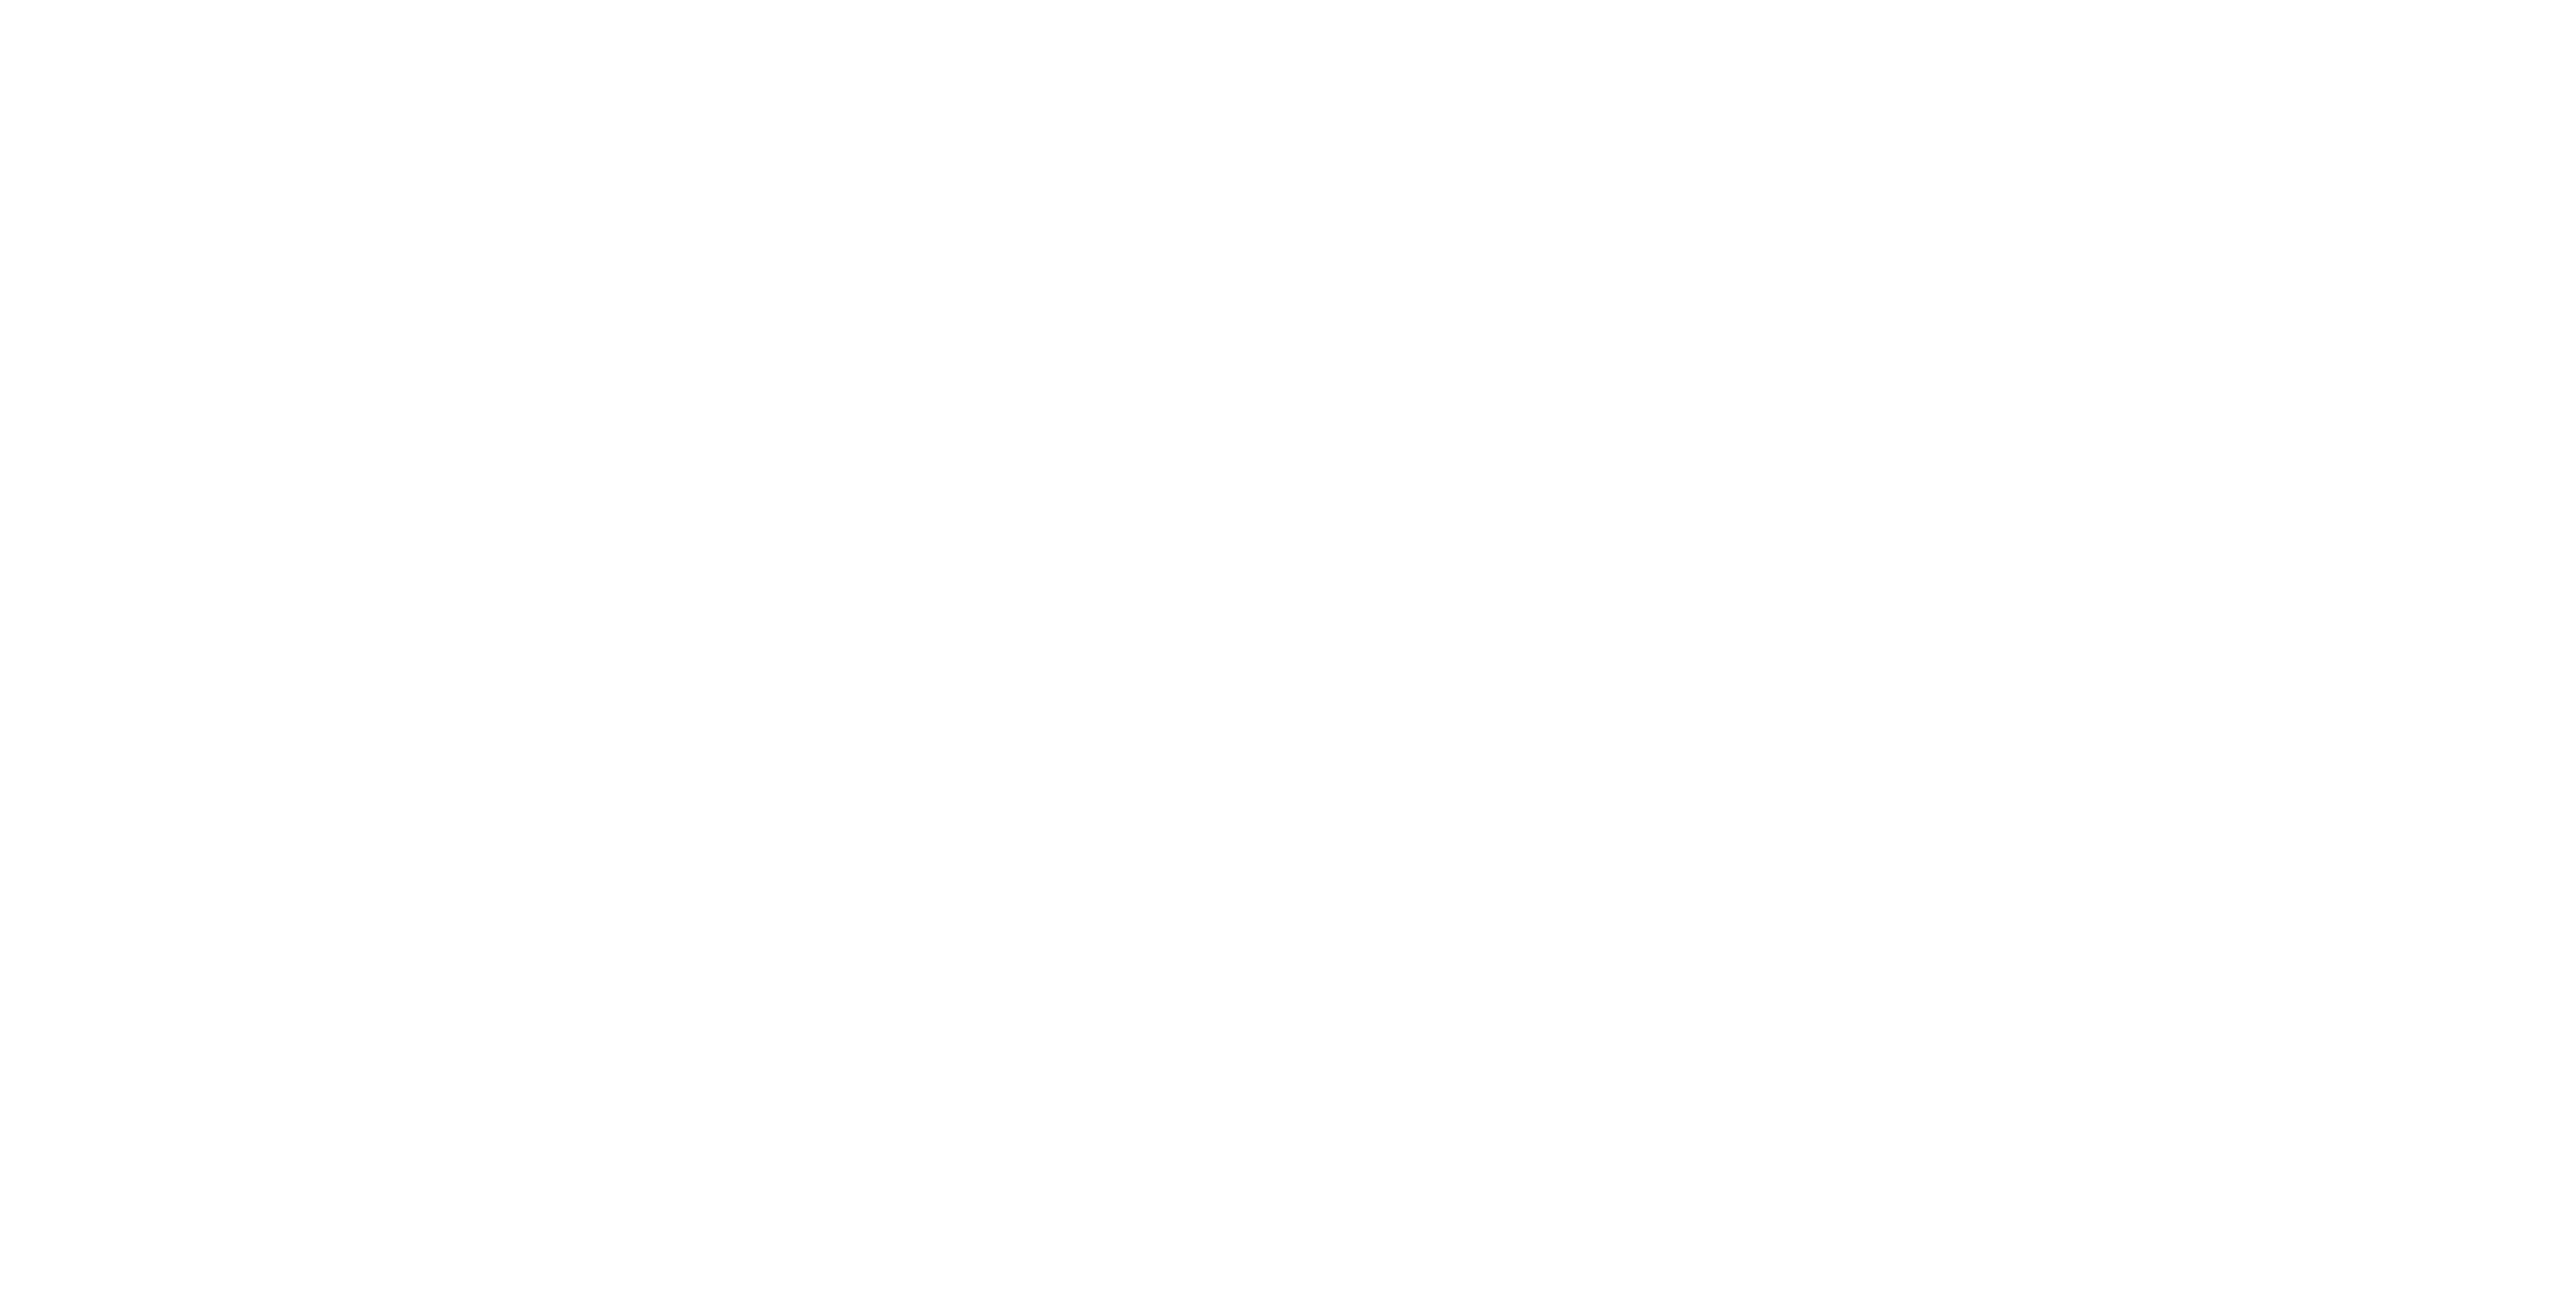 Gabriel Cox